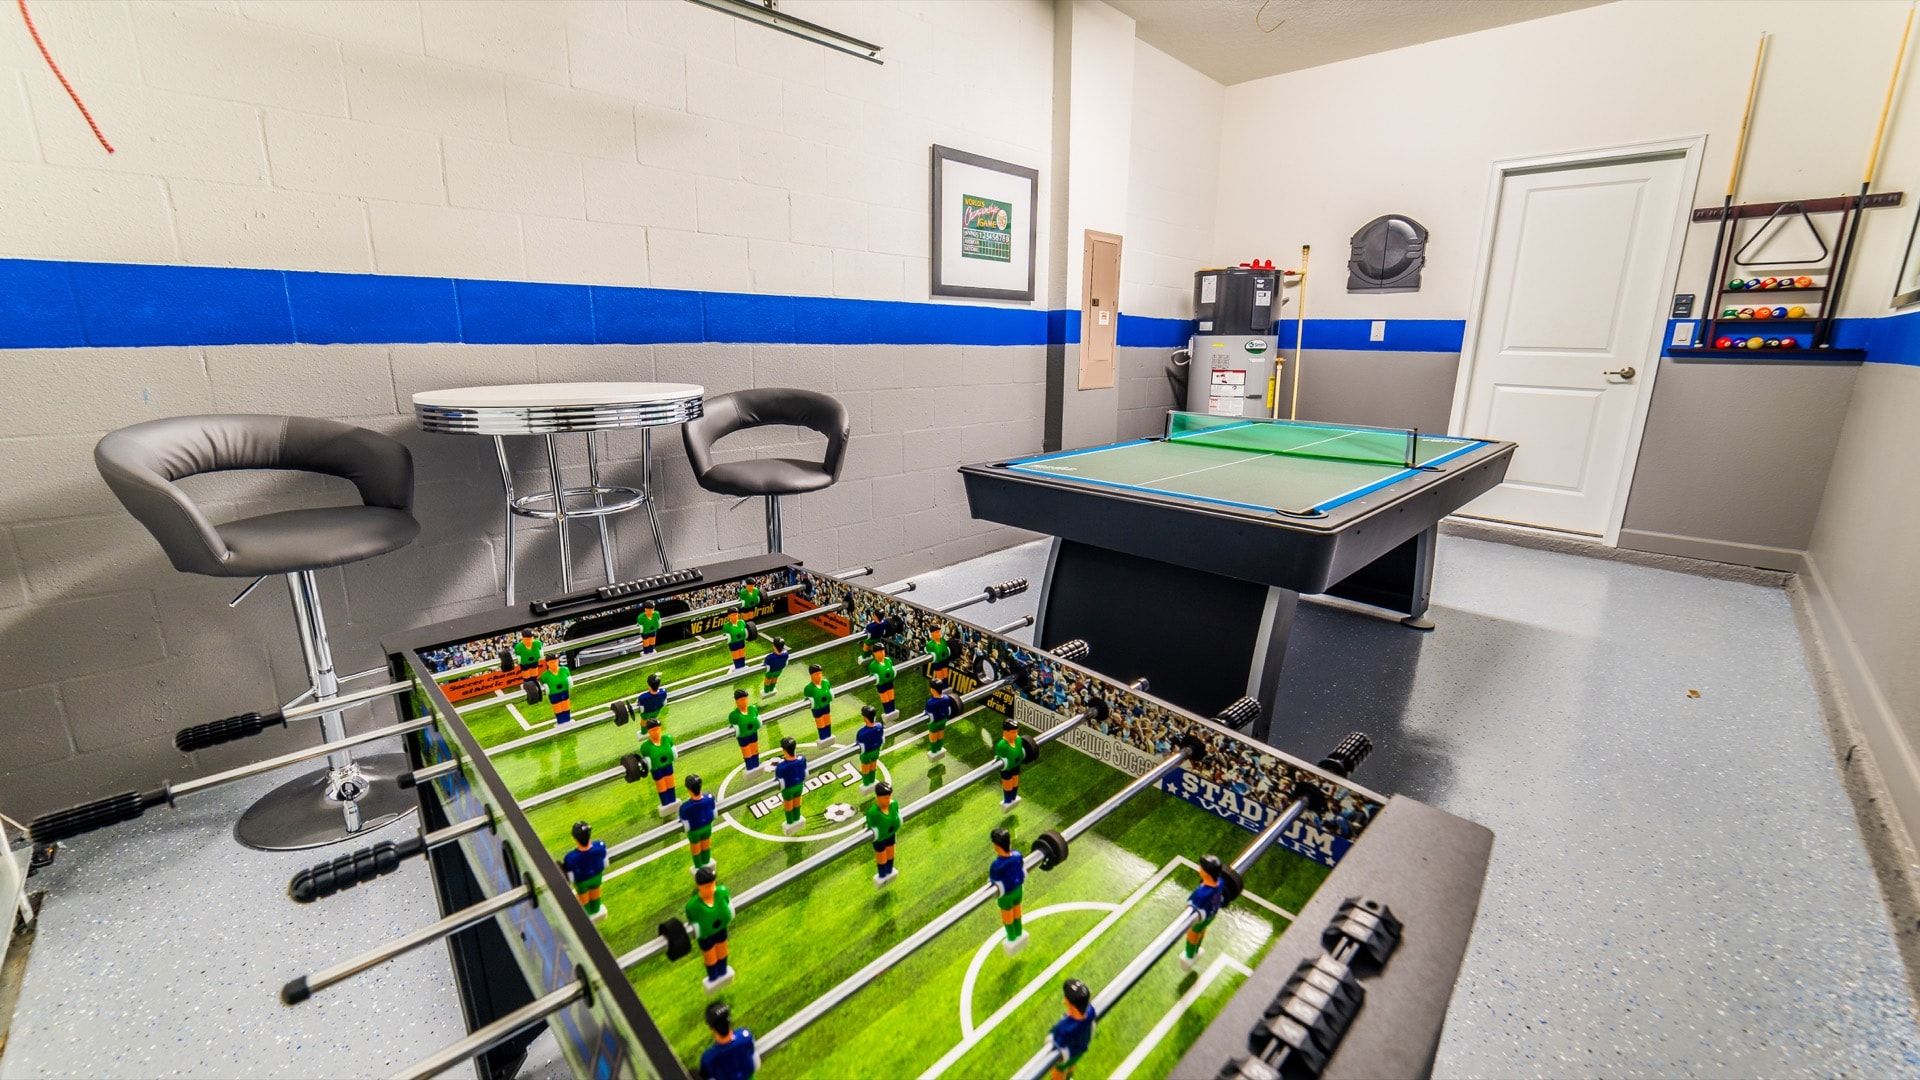 Game Room (Angle )Pool/Ping Pong TableFoosball